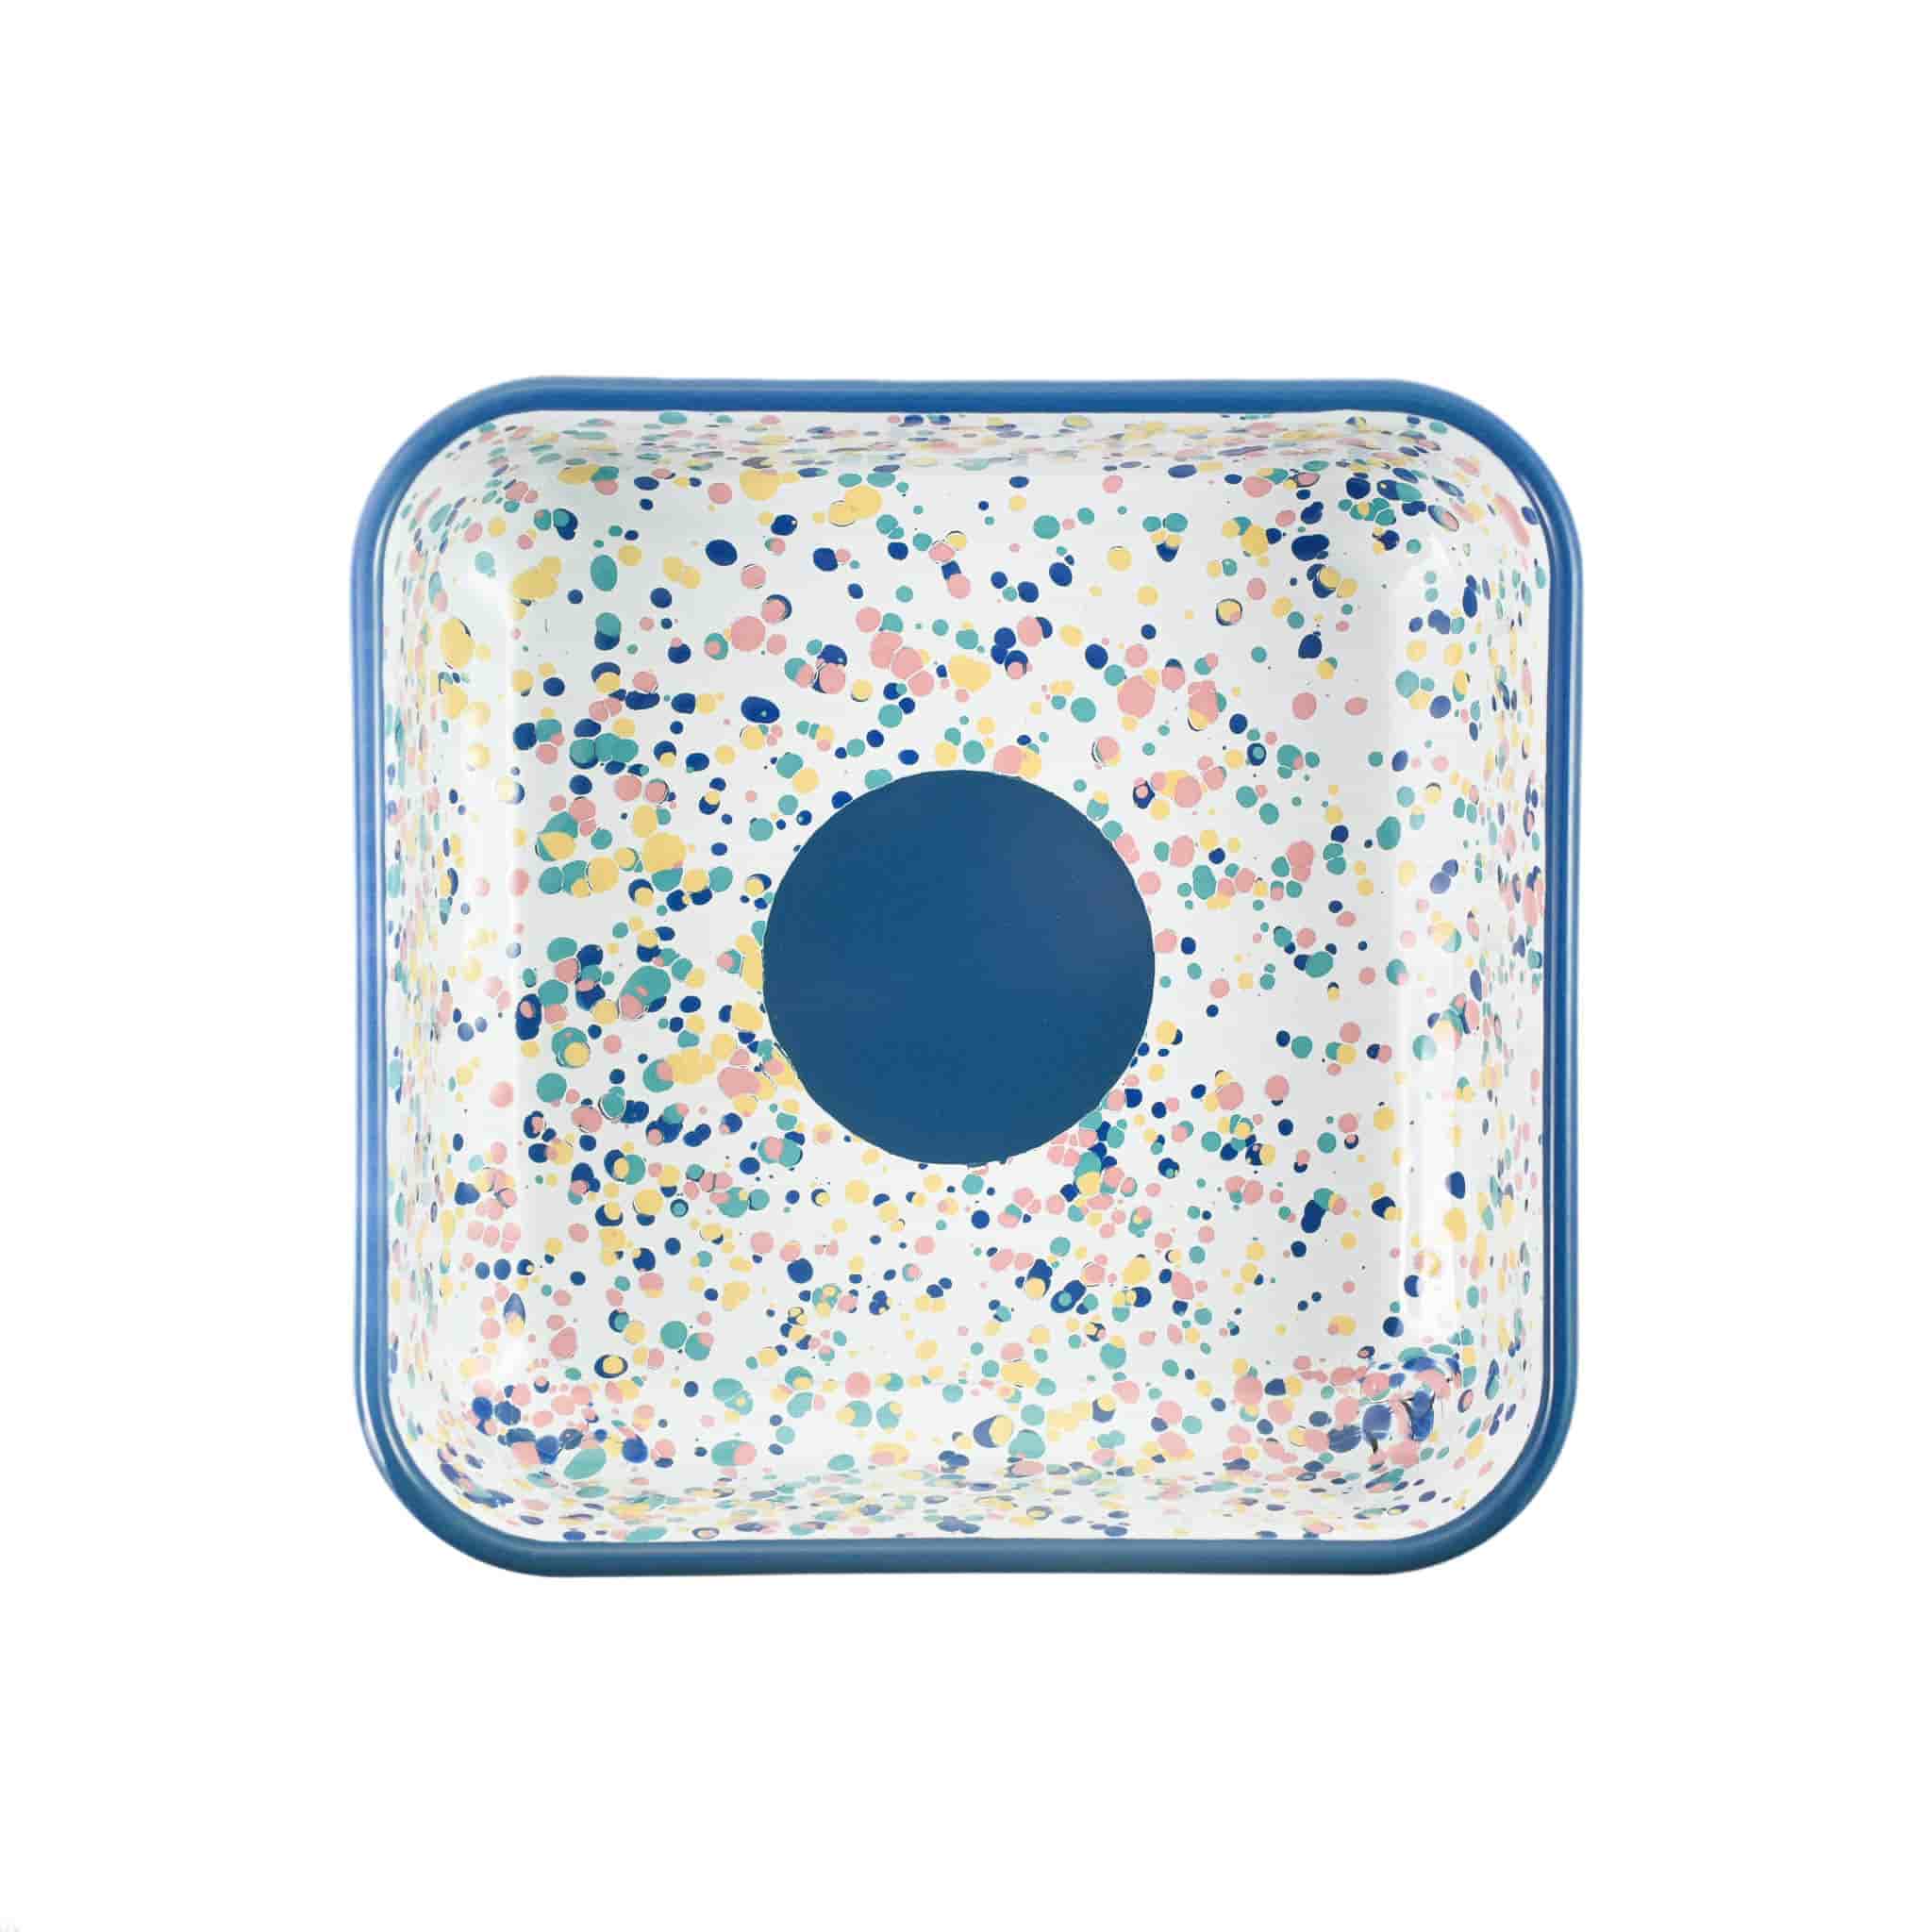 Blue Dot Enamel Square Roasting & Serving Dish, 21cm